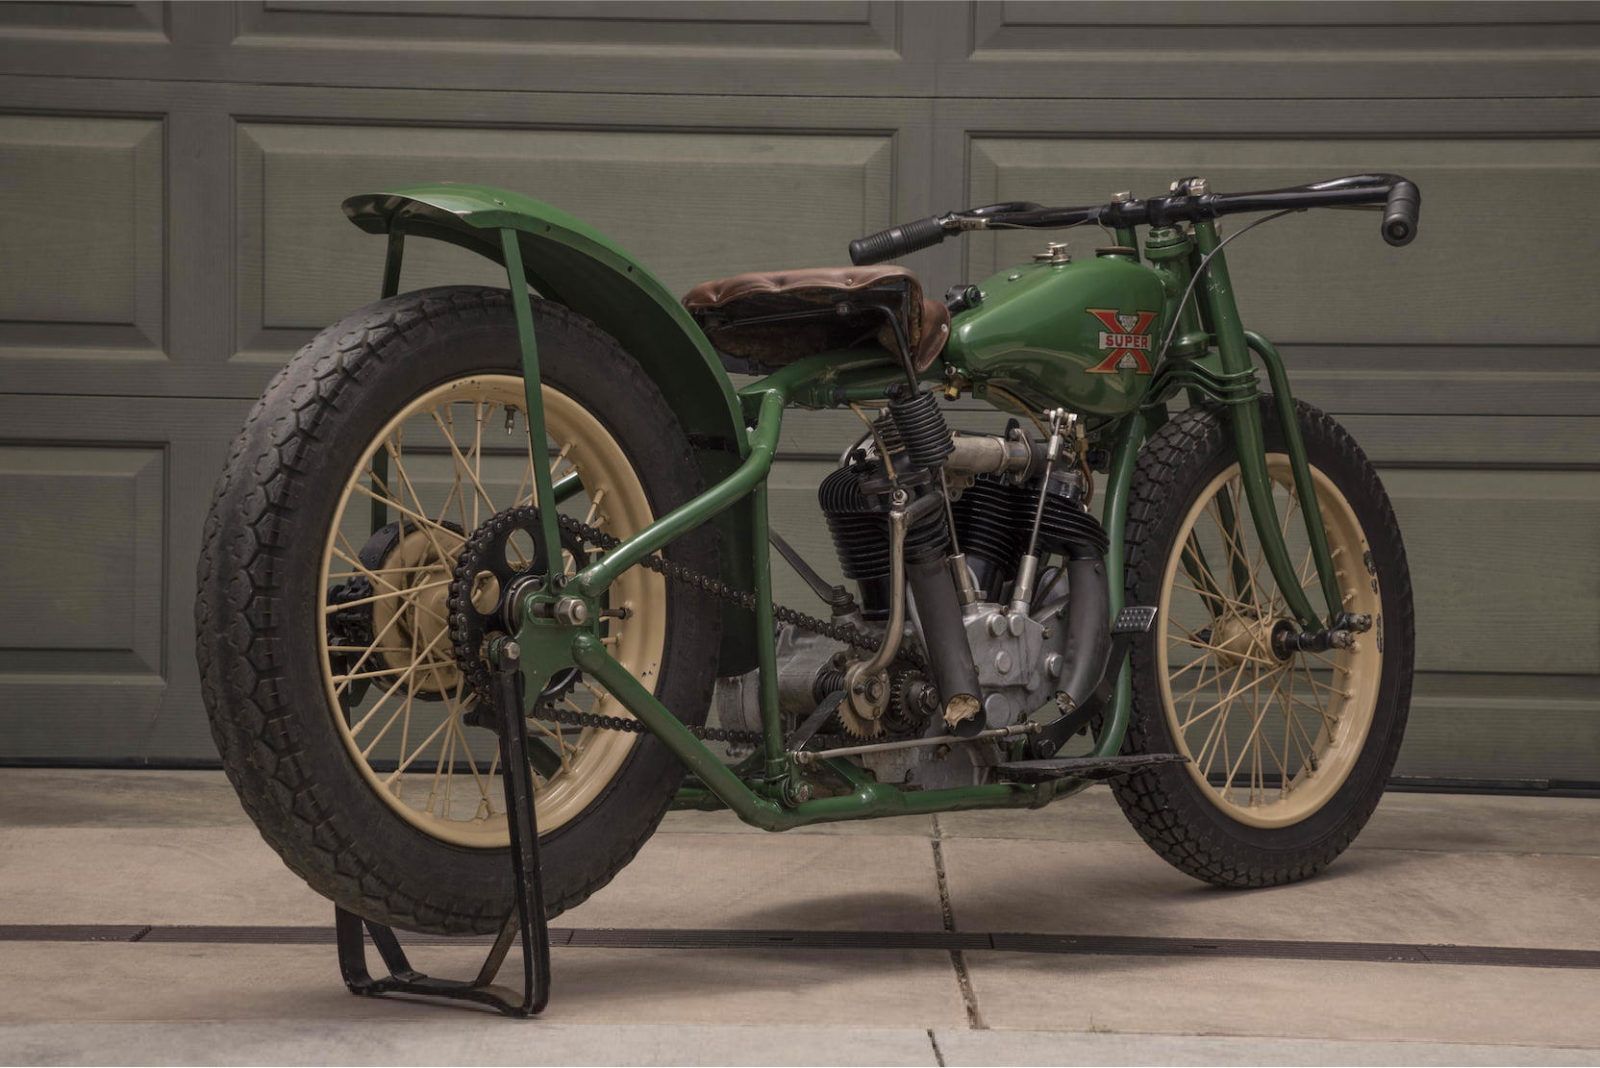 Steve Mcqueen's 1920s motorcycle